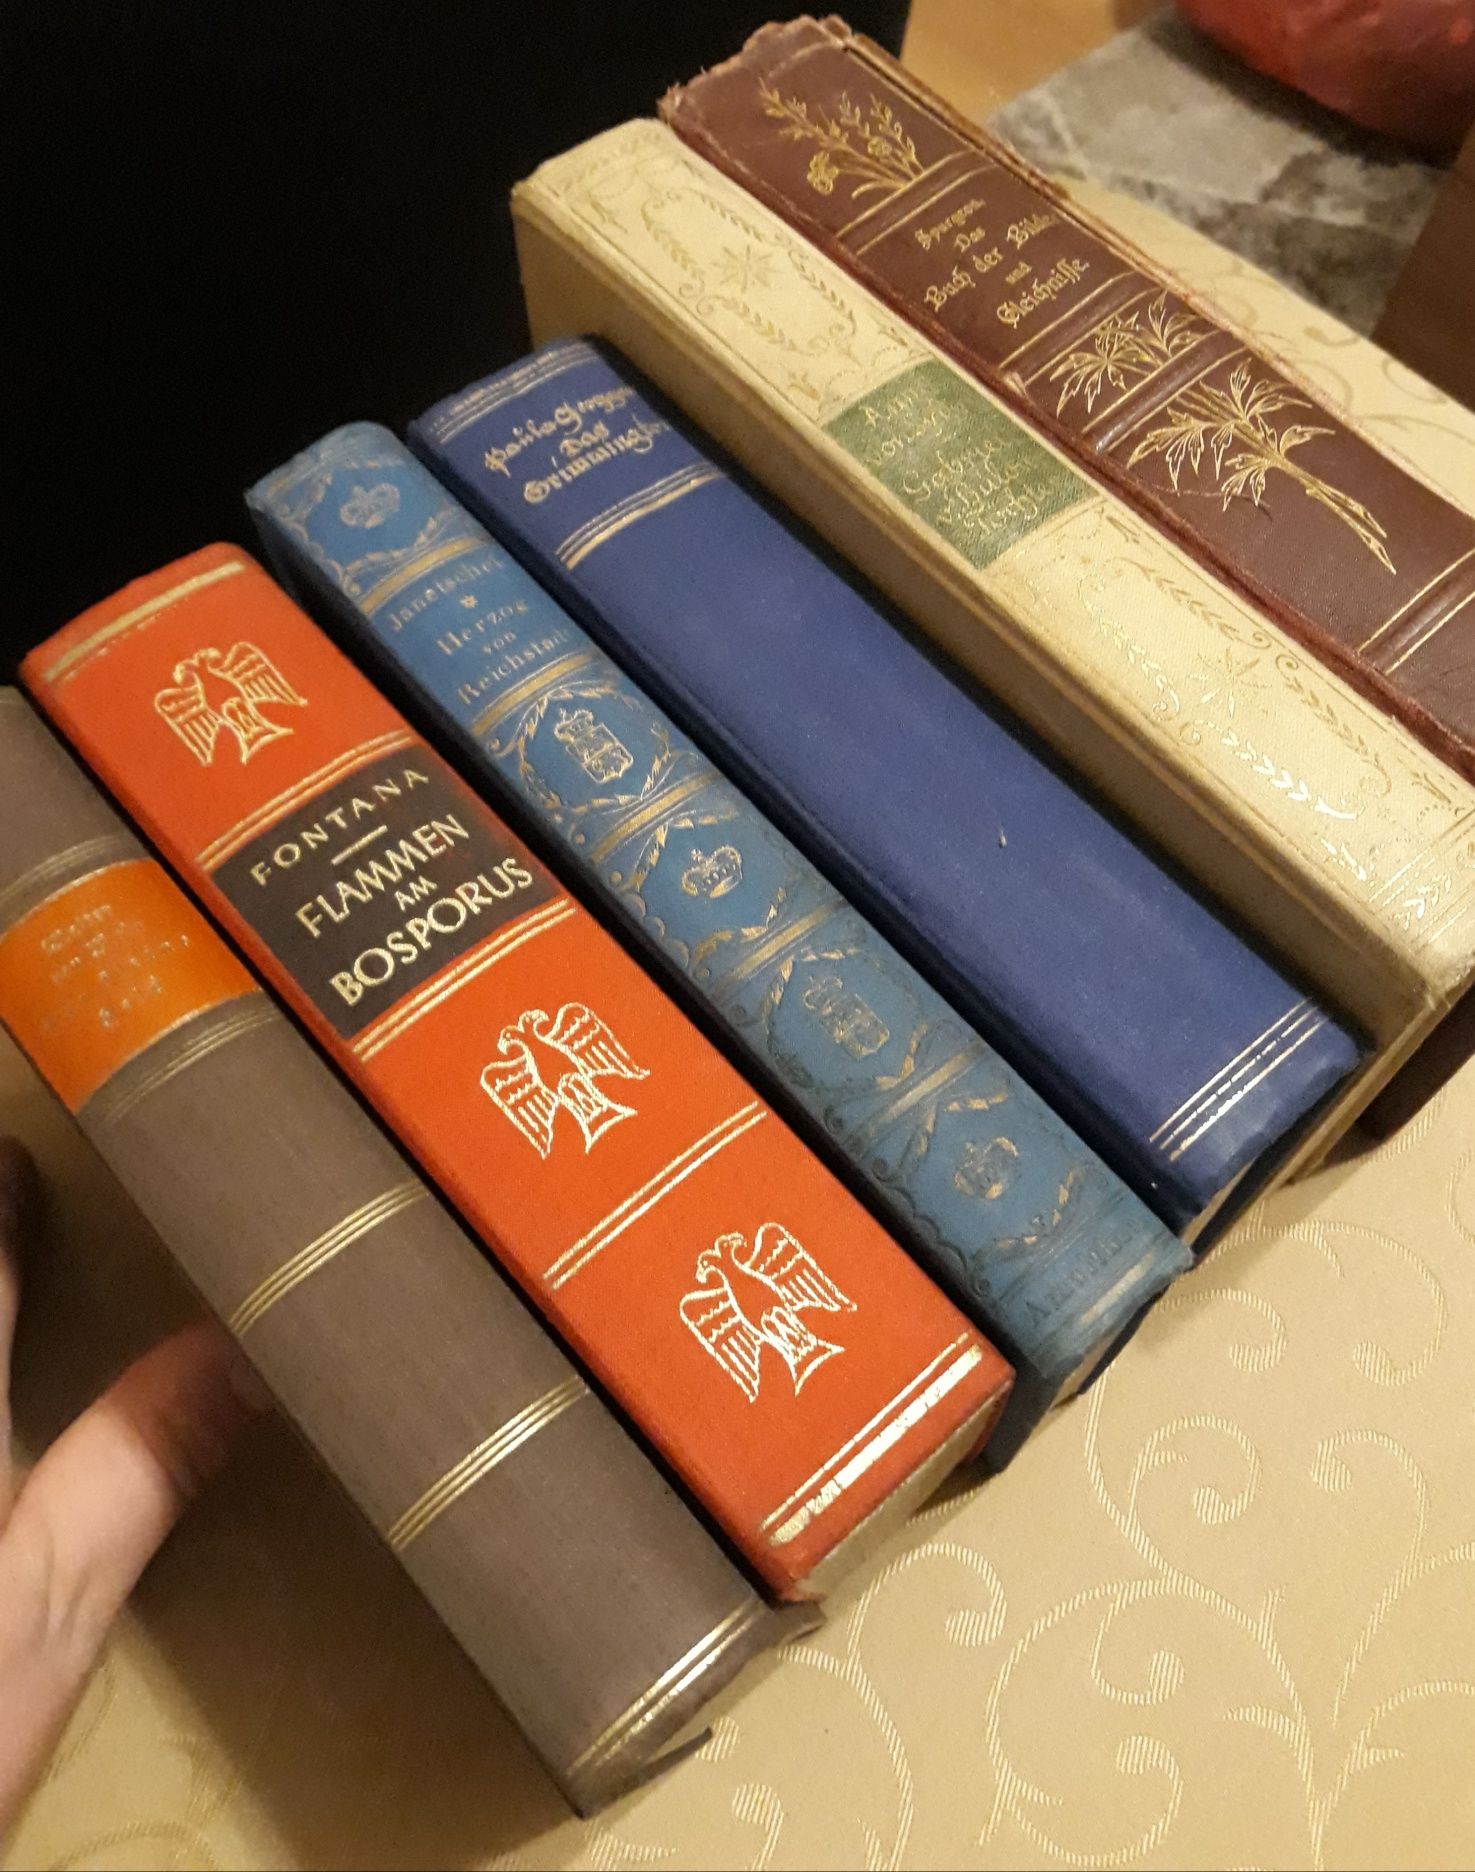 Pozłacane, przedwojenne stare książki. Pięknie, praktycznie antyk